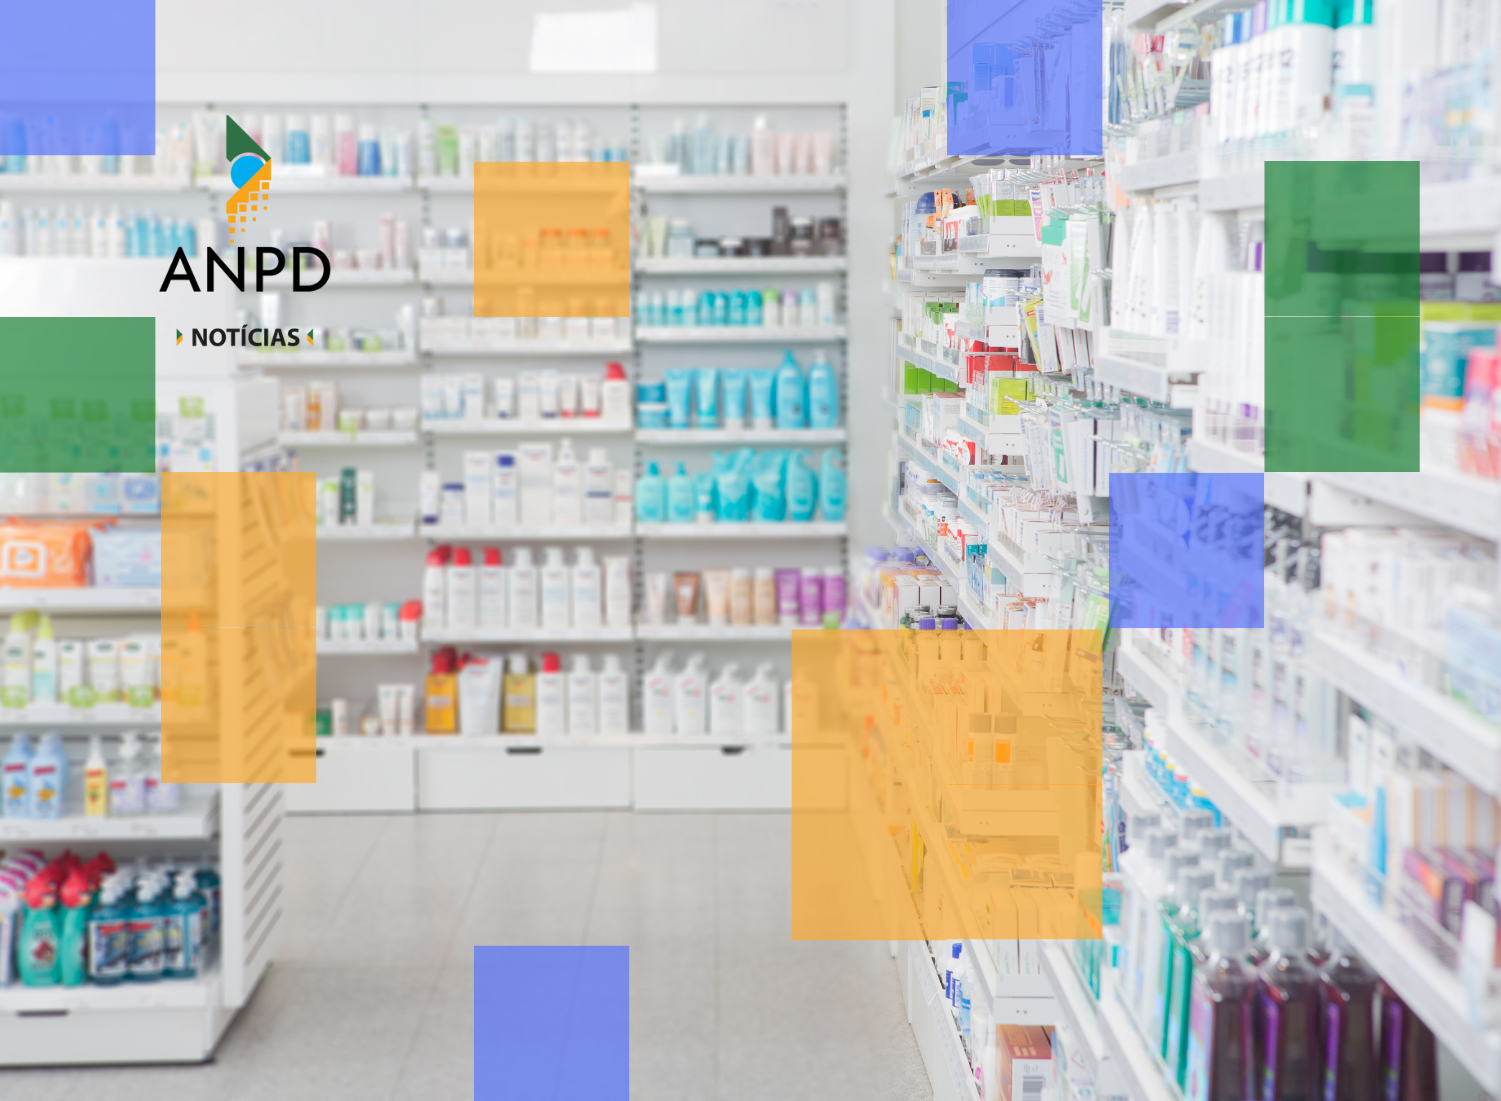 O documento traz uma série de constatações sobre o uso de dados pessoais em farmácias para oferecer descontos em medicamentos